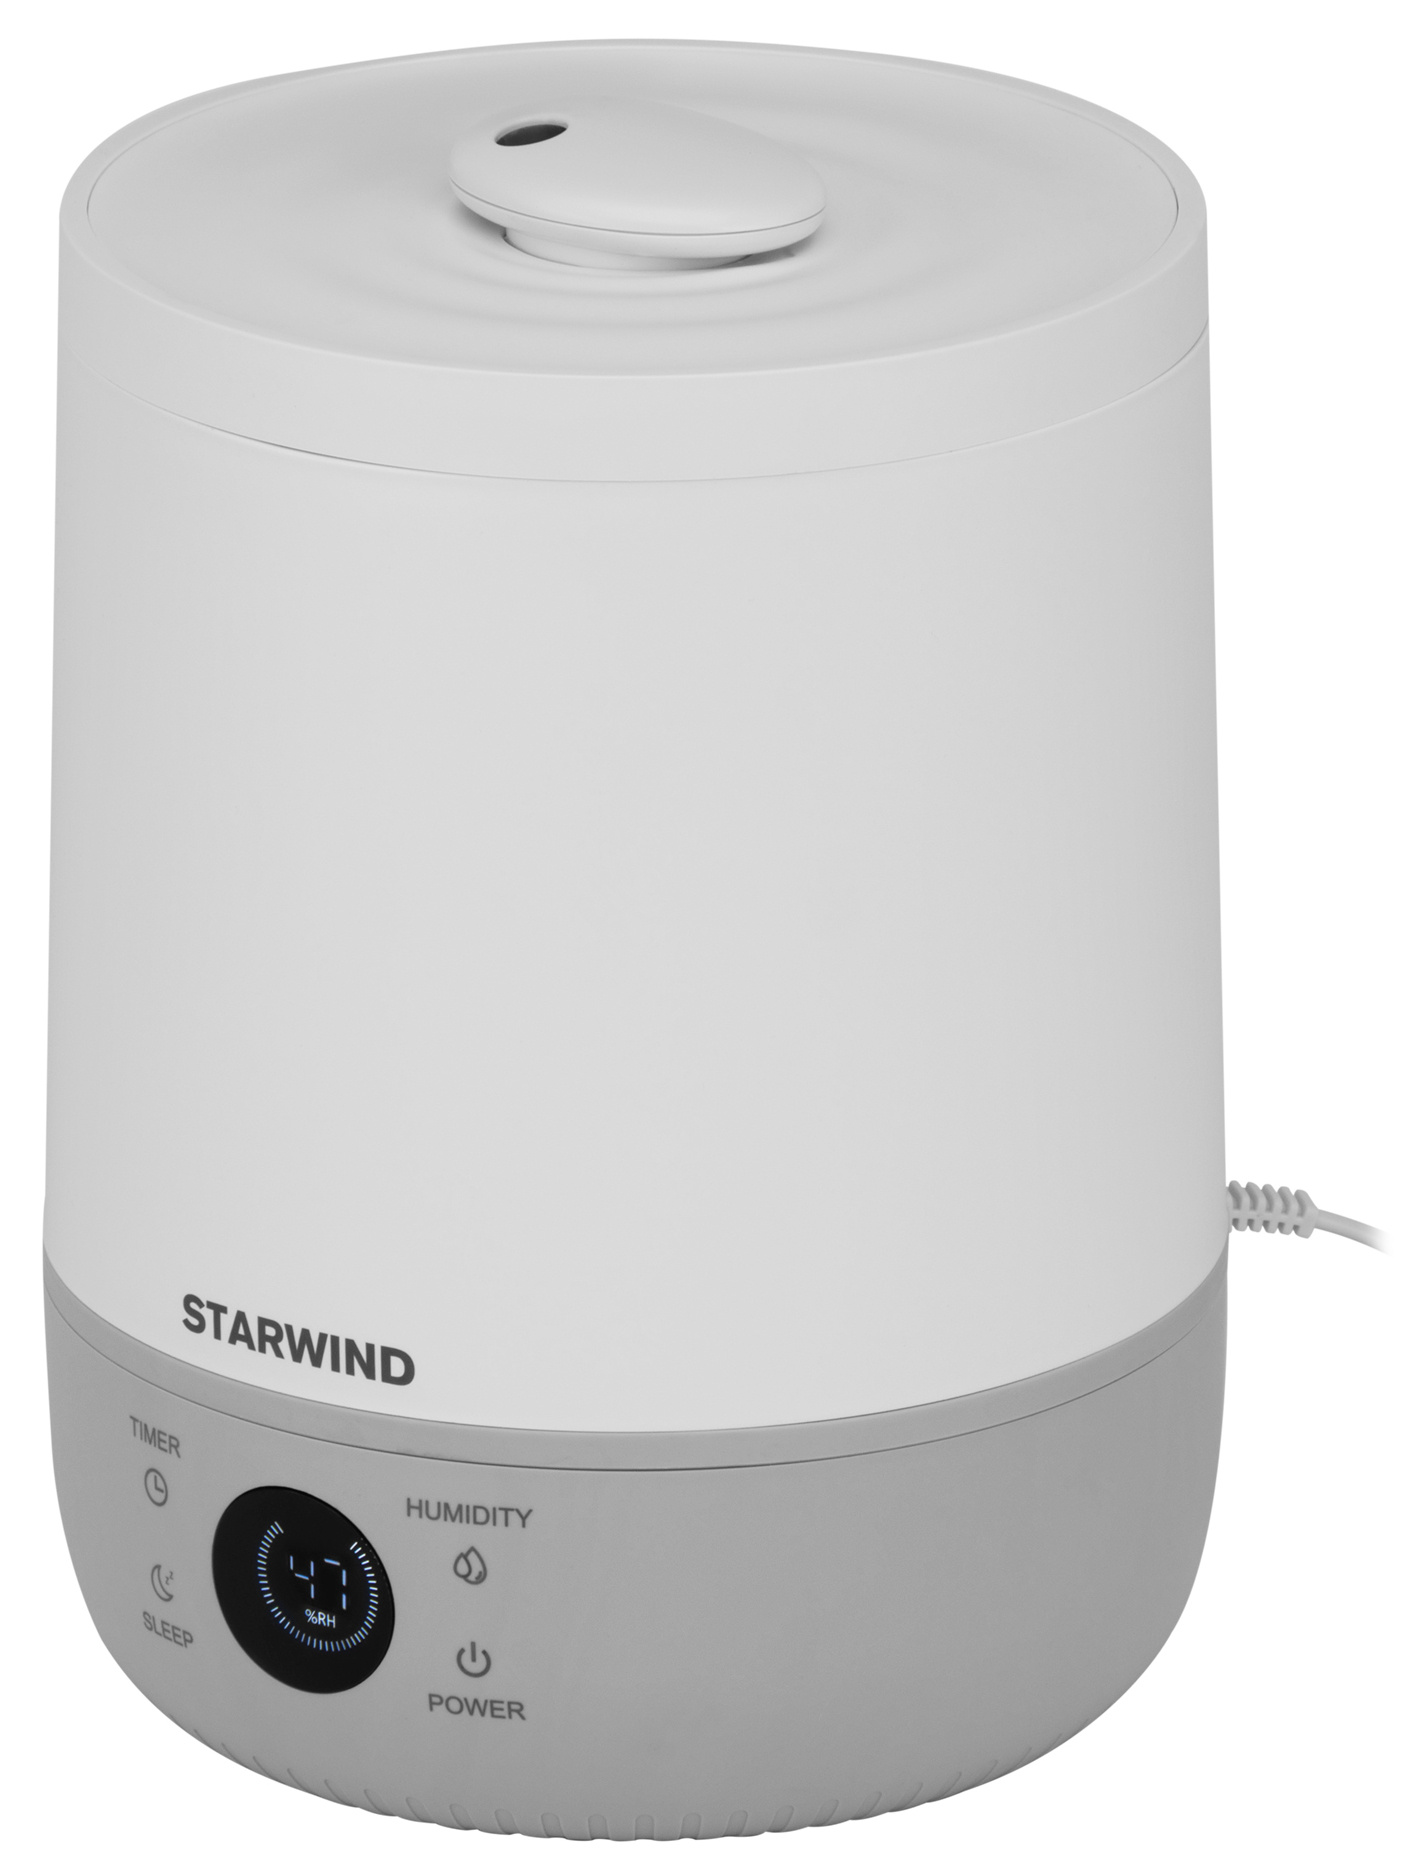 Увлажнитель воздуха Starwind SHC1525 белый/серый от магазина Старвинд